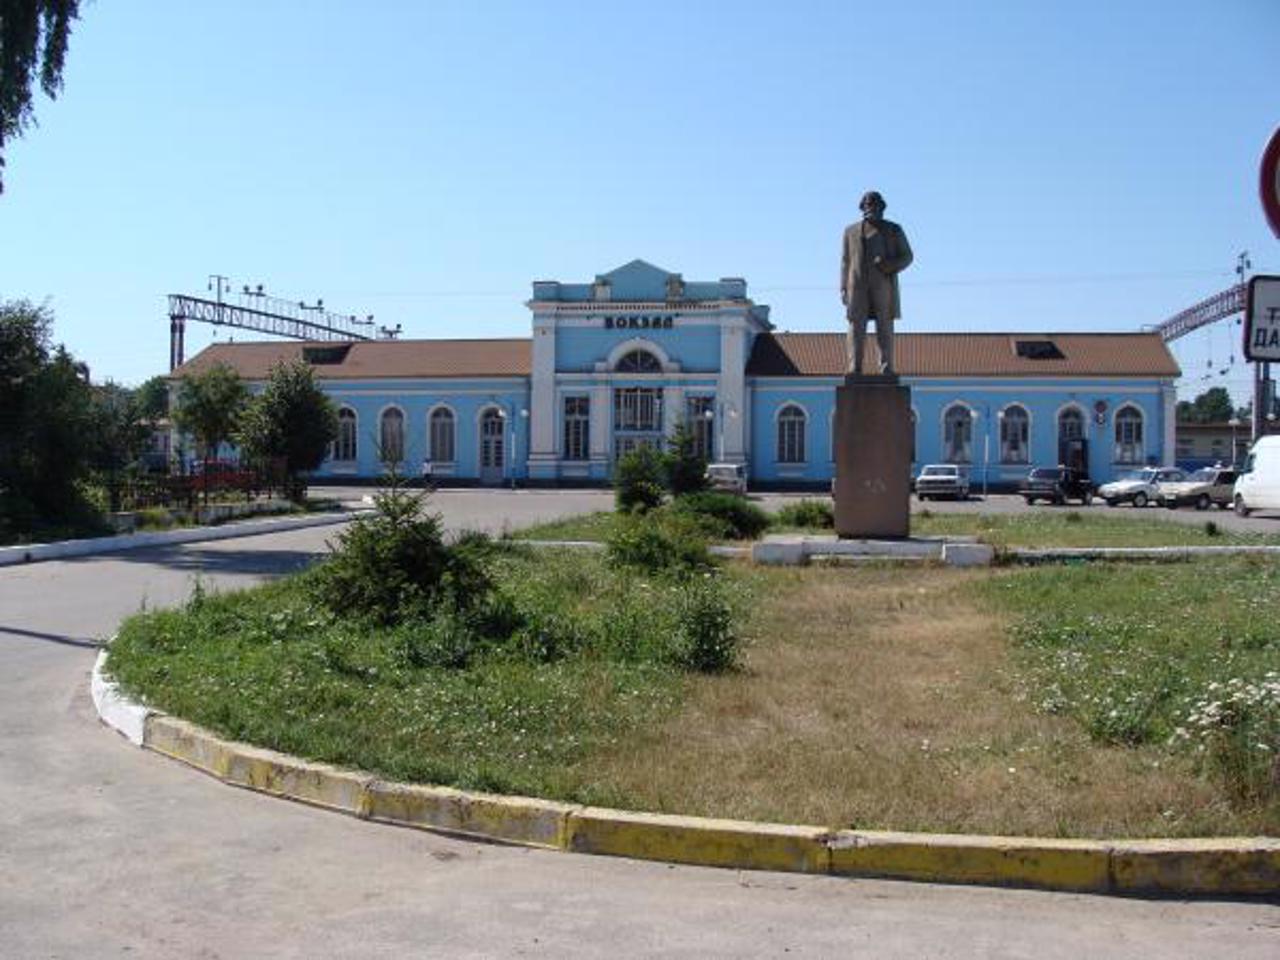 Museum of Central Railway, Derazhnia